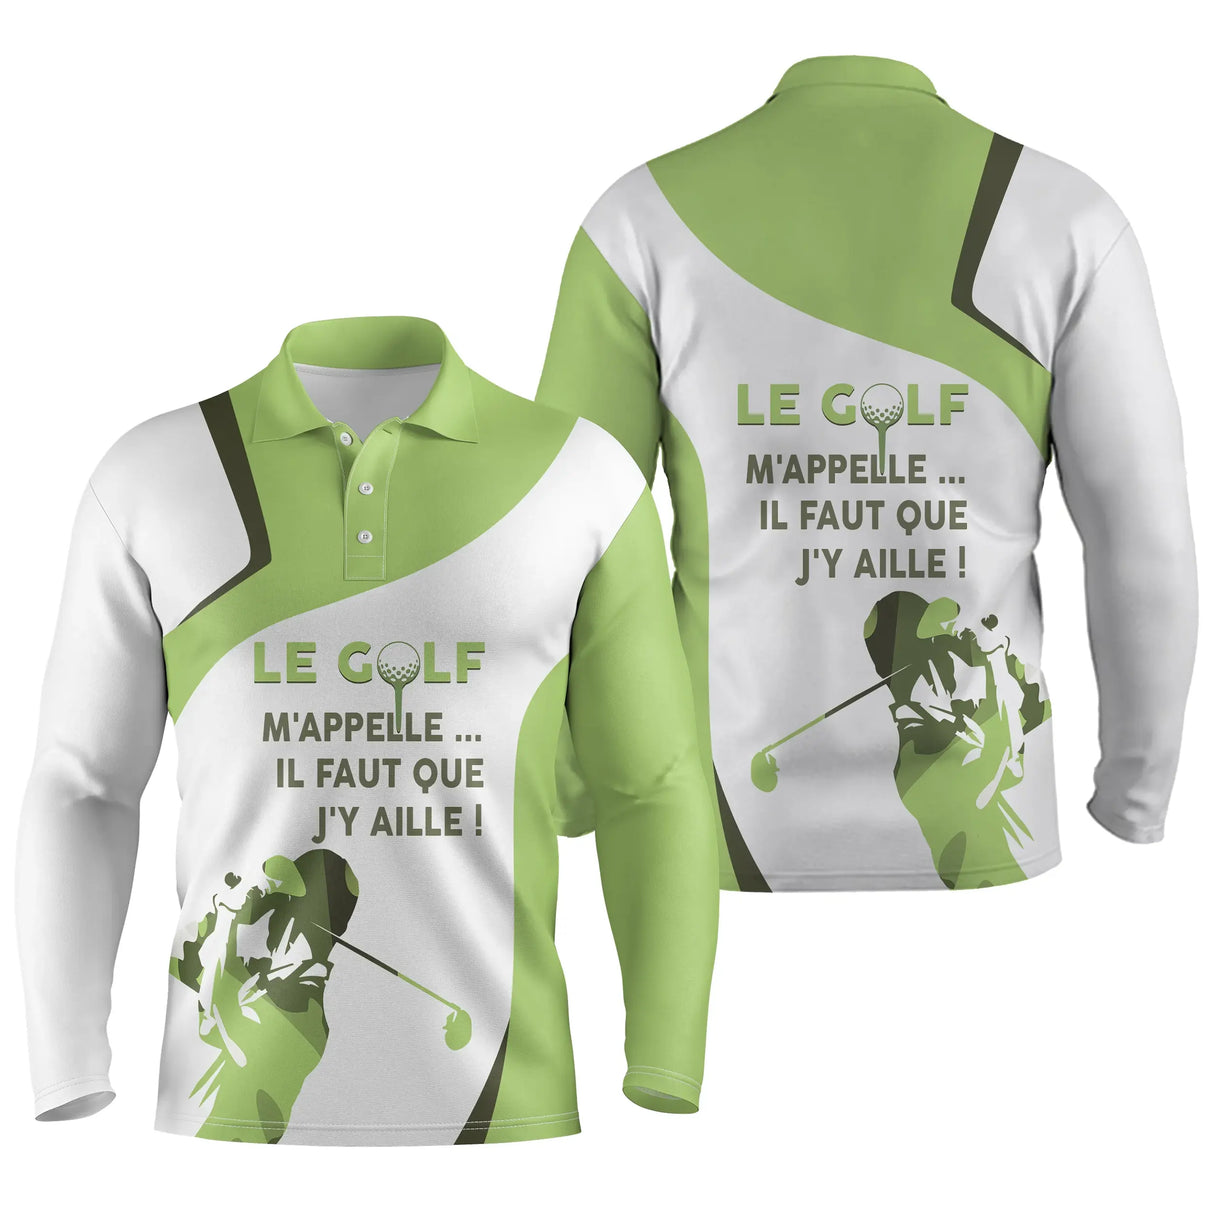 Polo Le Golf M'appelle, Il Faut Que J'y Aille, Cadeau Original Golfeur - CT10082219 - Polo Manches Longues Unisexe